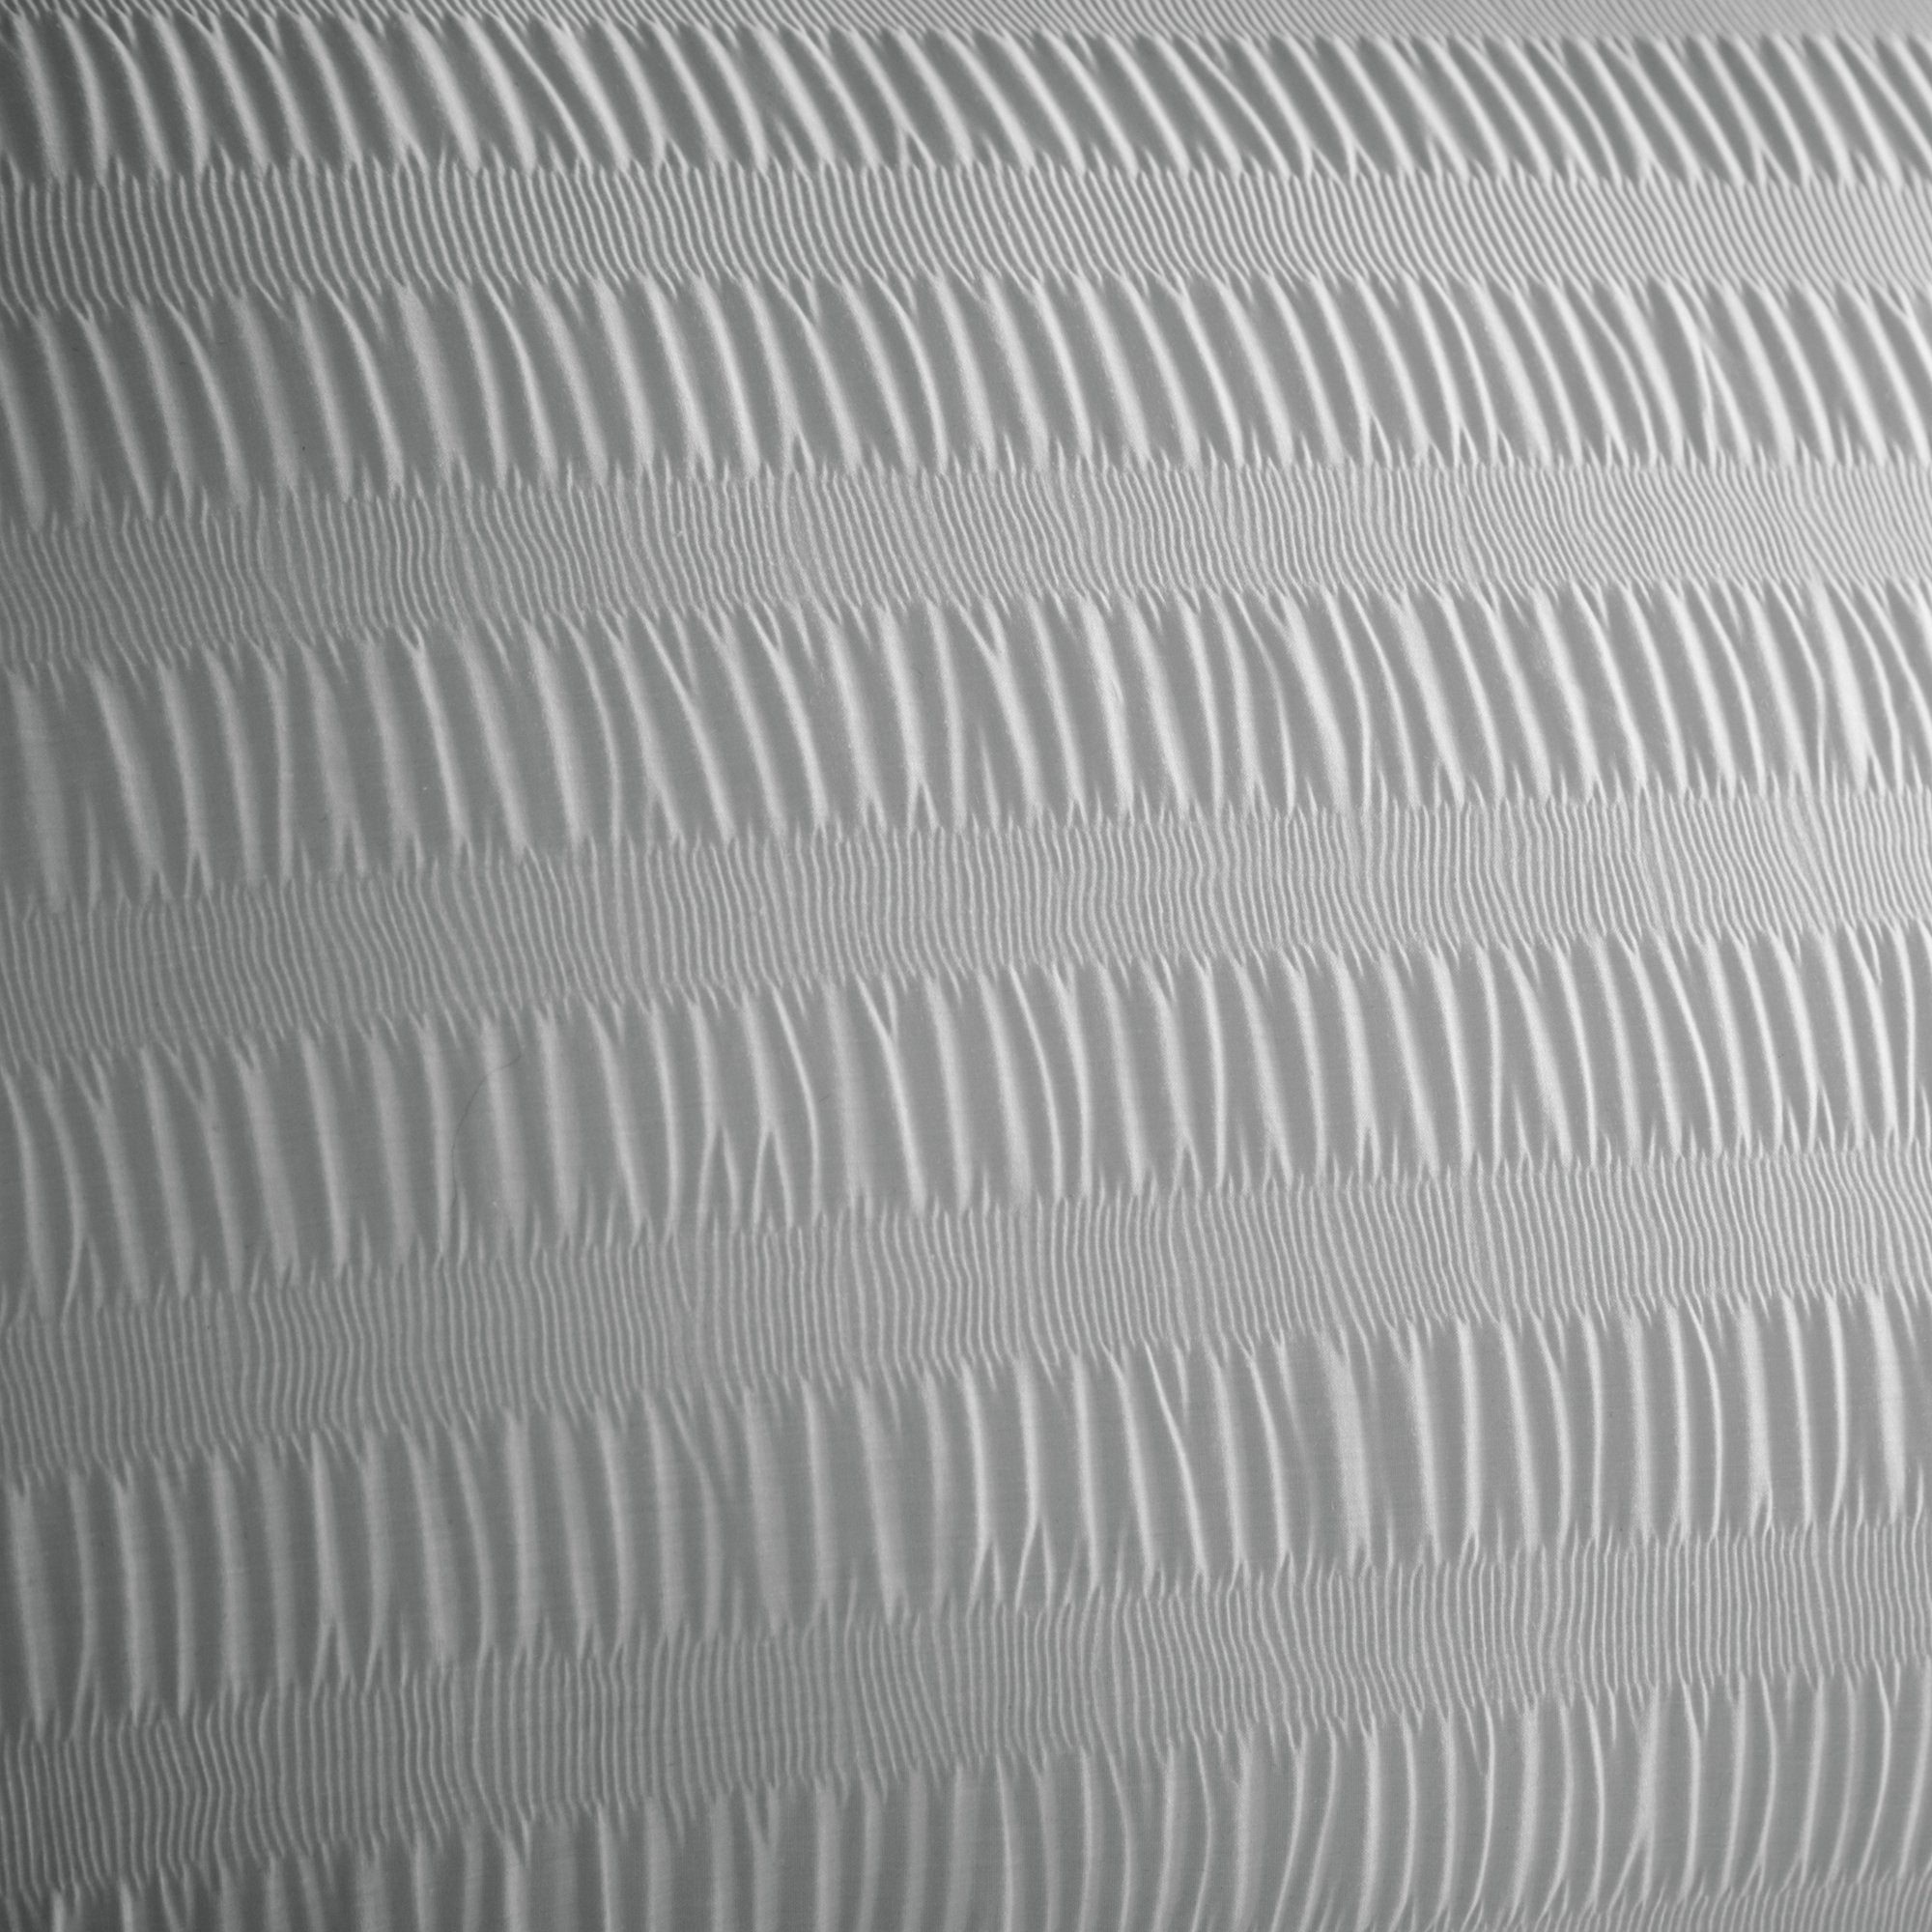 Duvet Cover Set Honley Seersucker by Serene in Silver